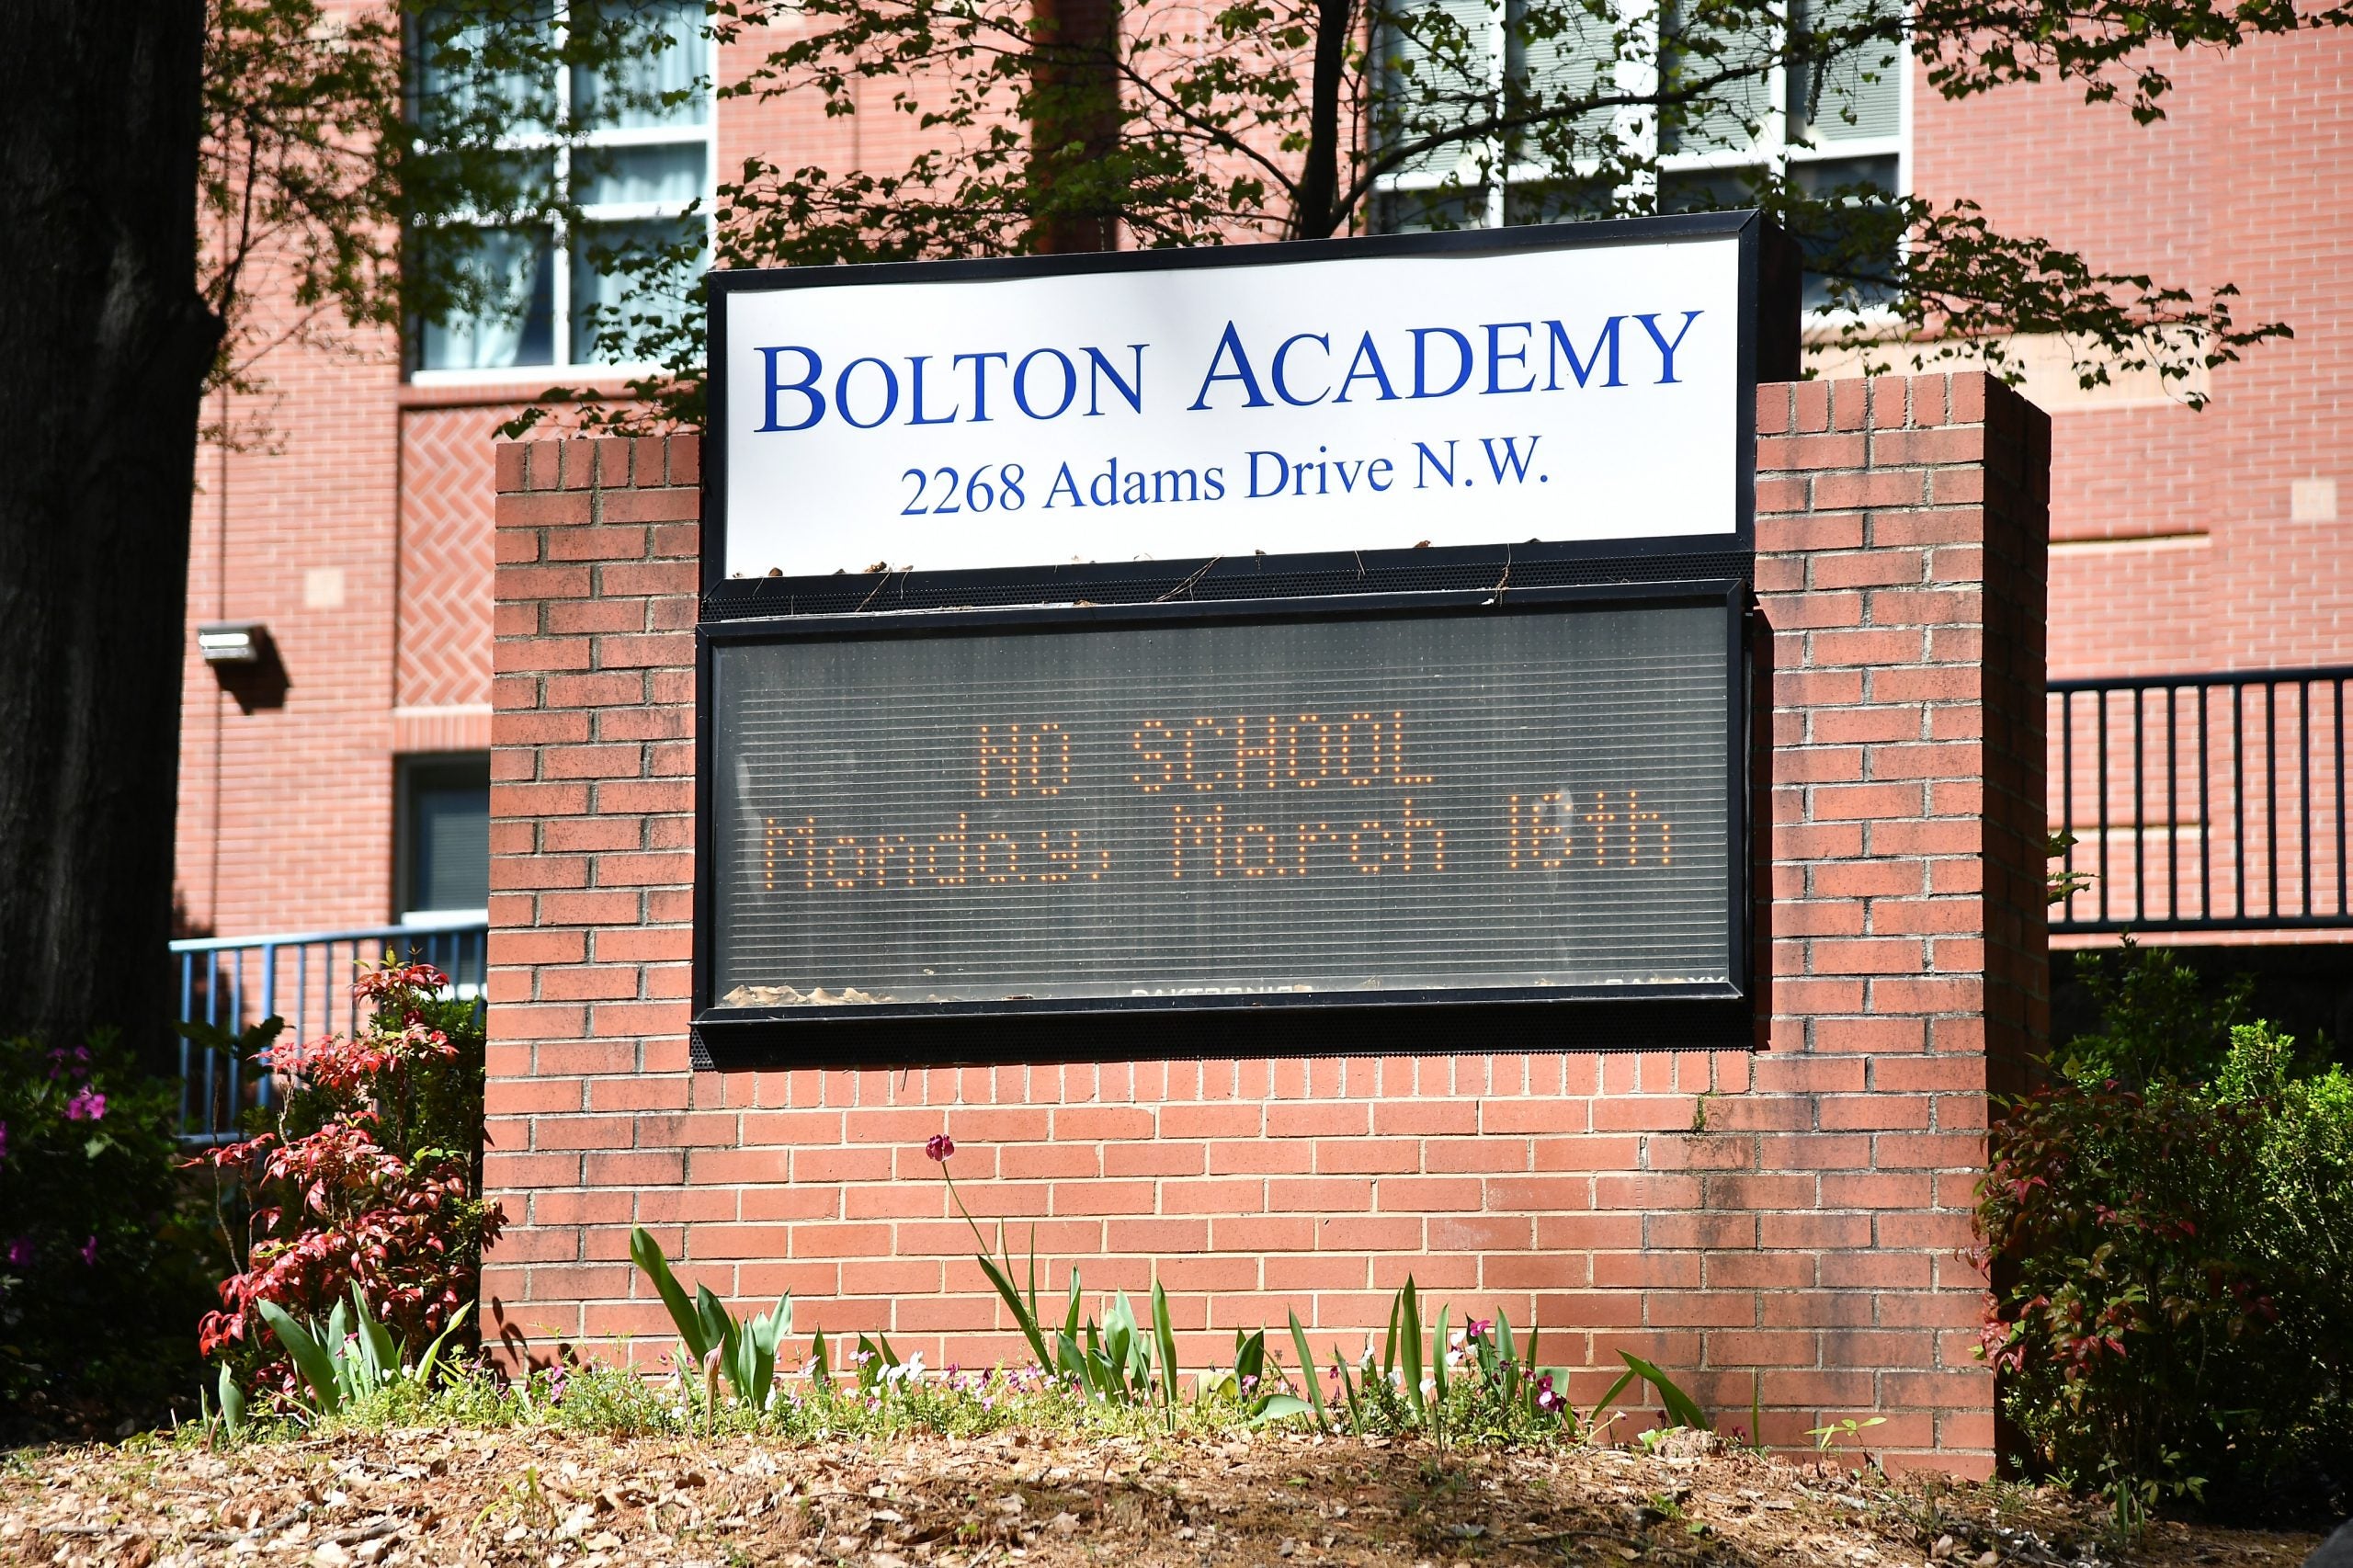 Bolton Academy school building displays 